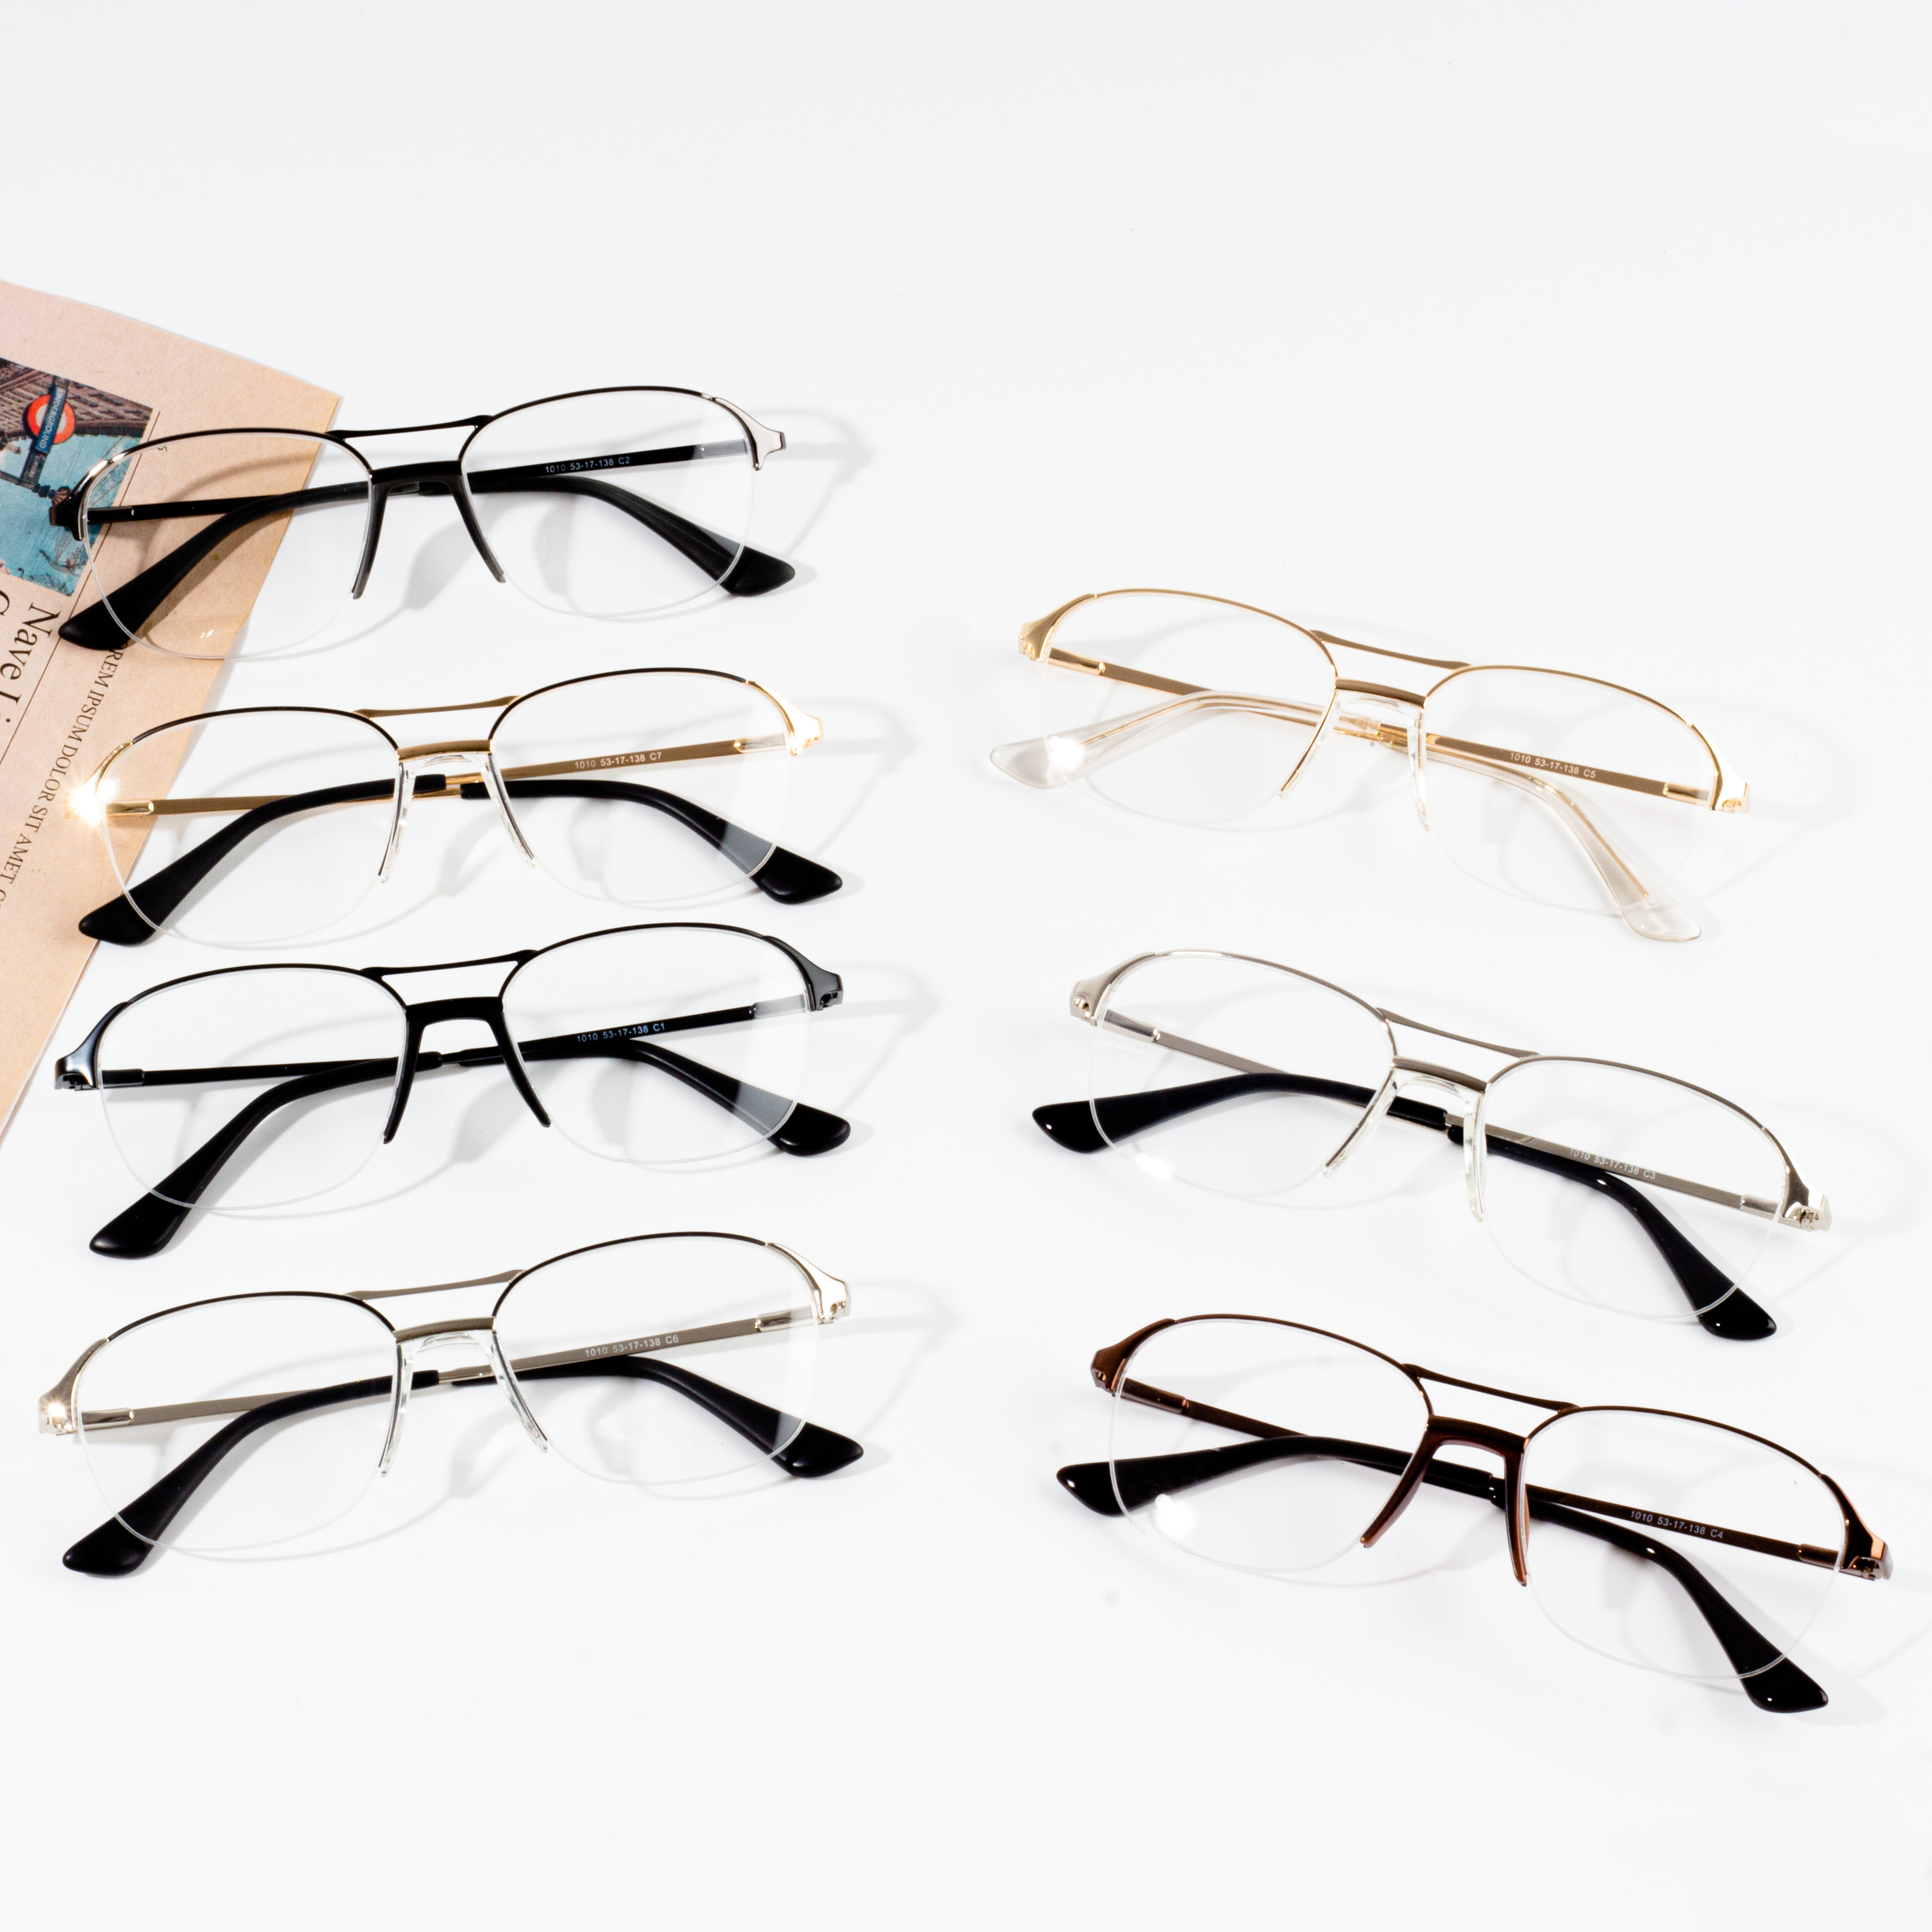 Nejprodávanější brýlové obruby pro muže na trhu